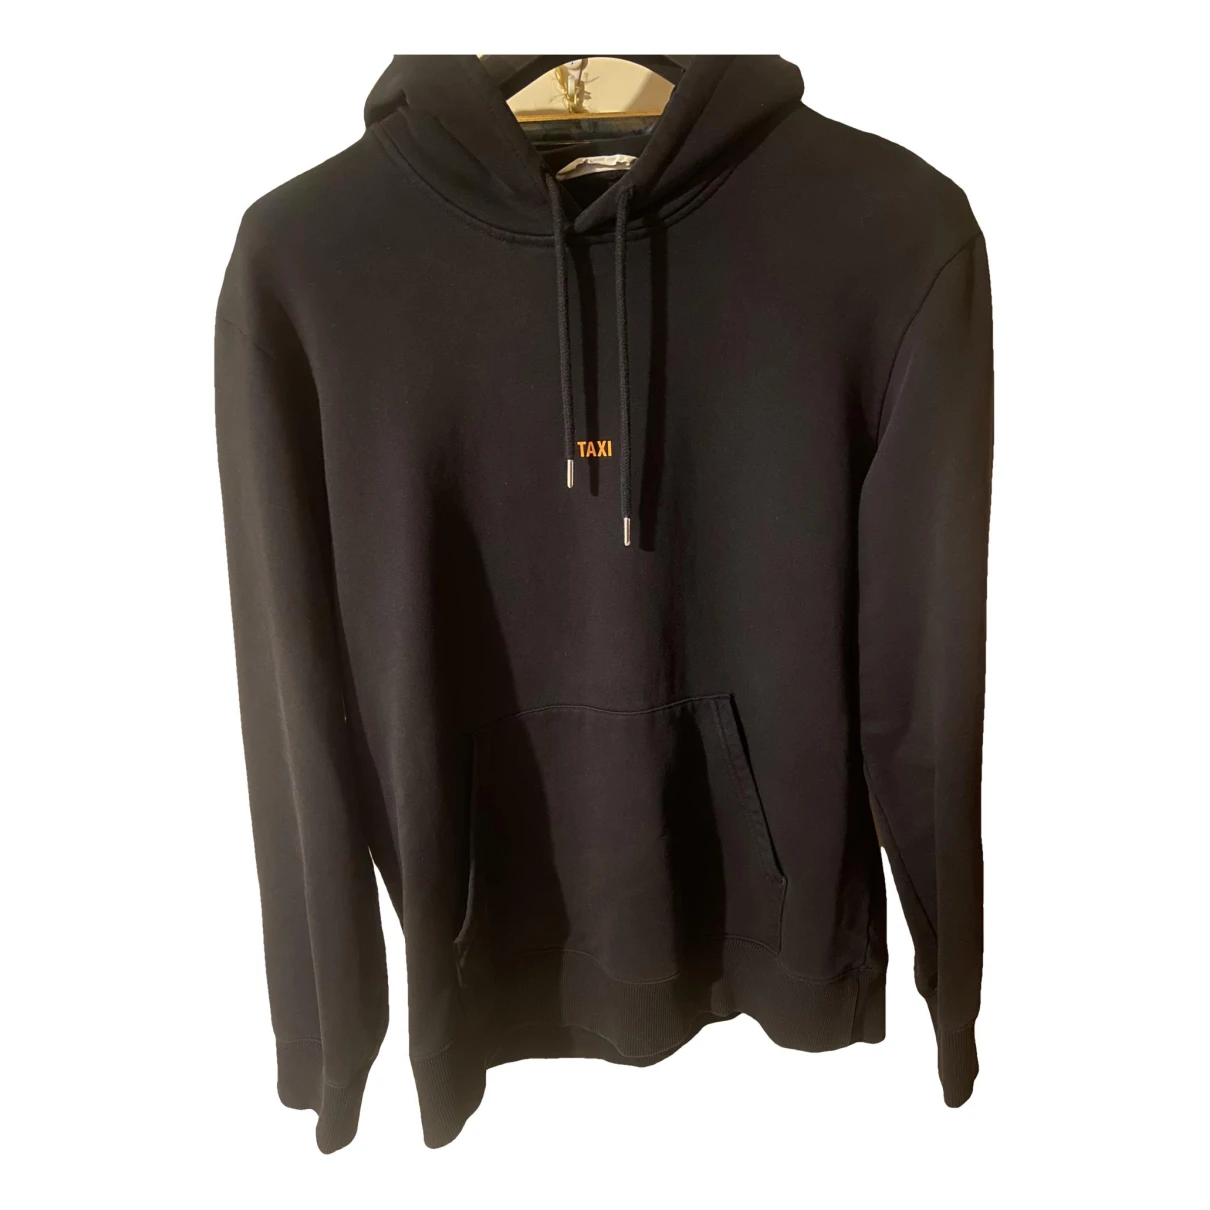 Pre-owned Helmut Lang Sweatshirt In Black